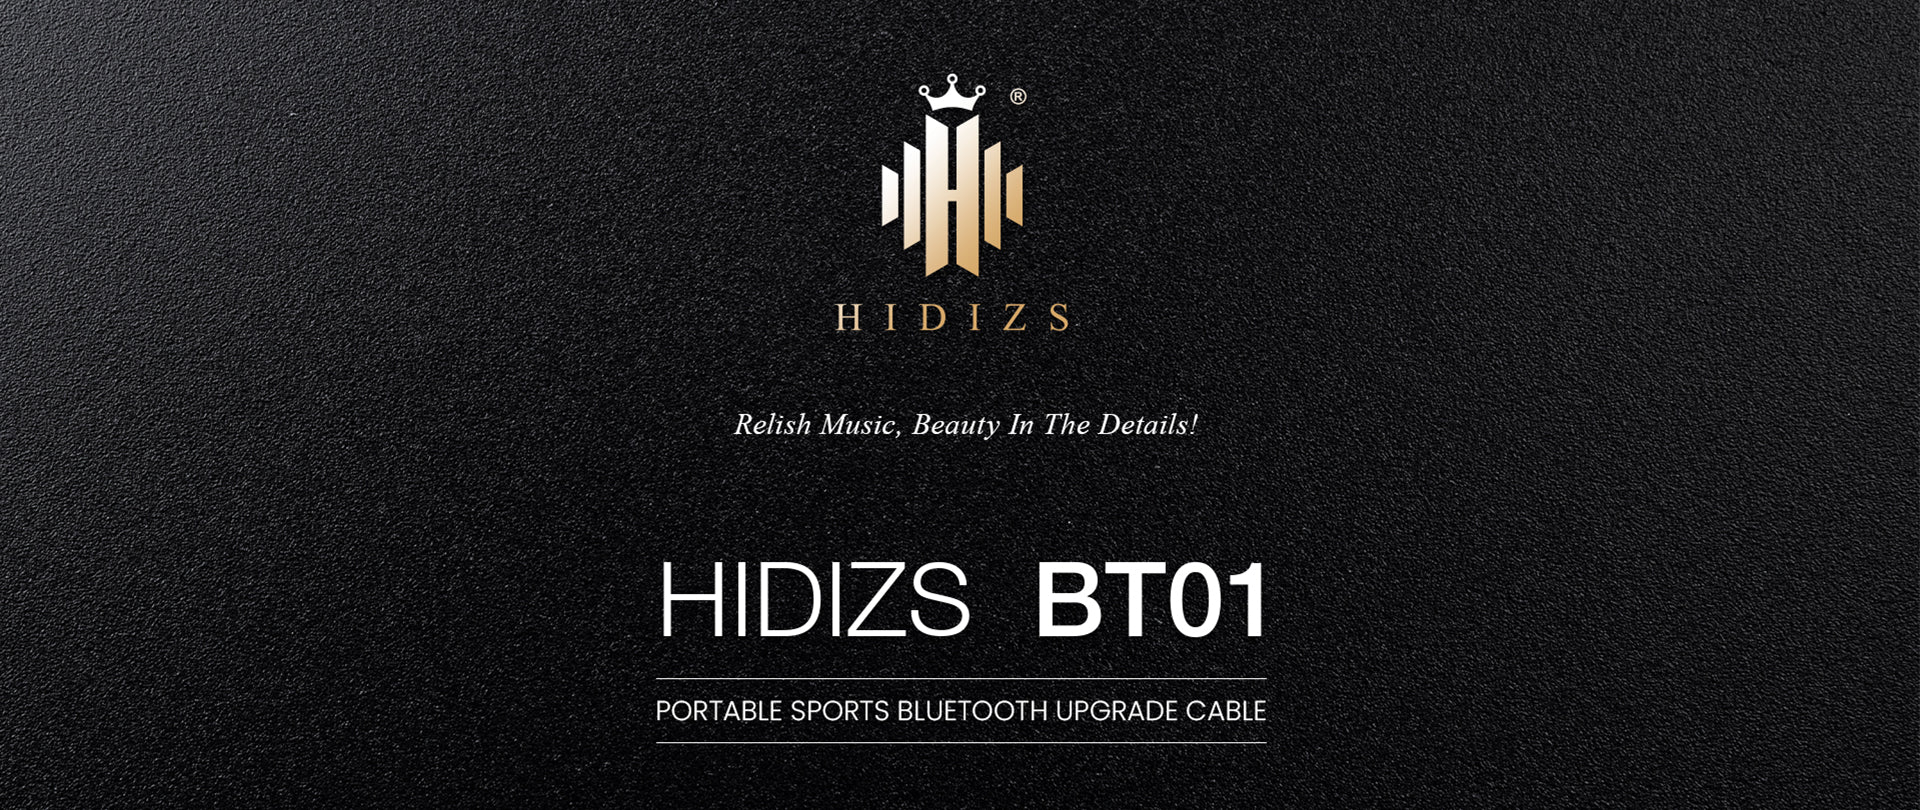 HIDIZS-BT01-PC-23032701